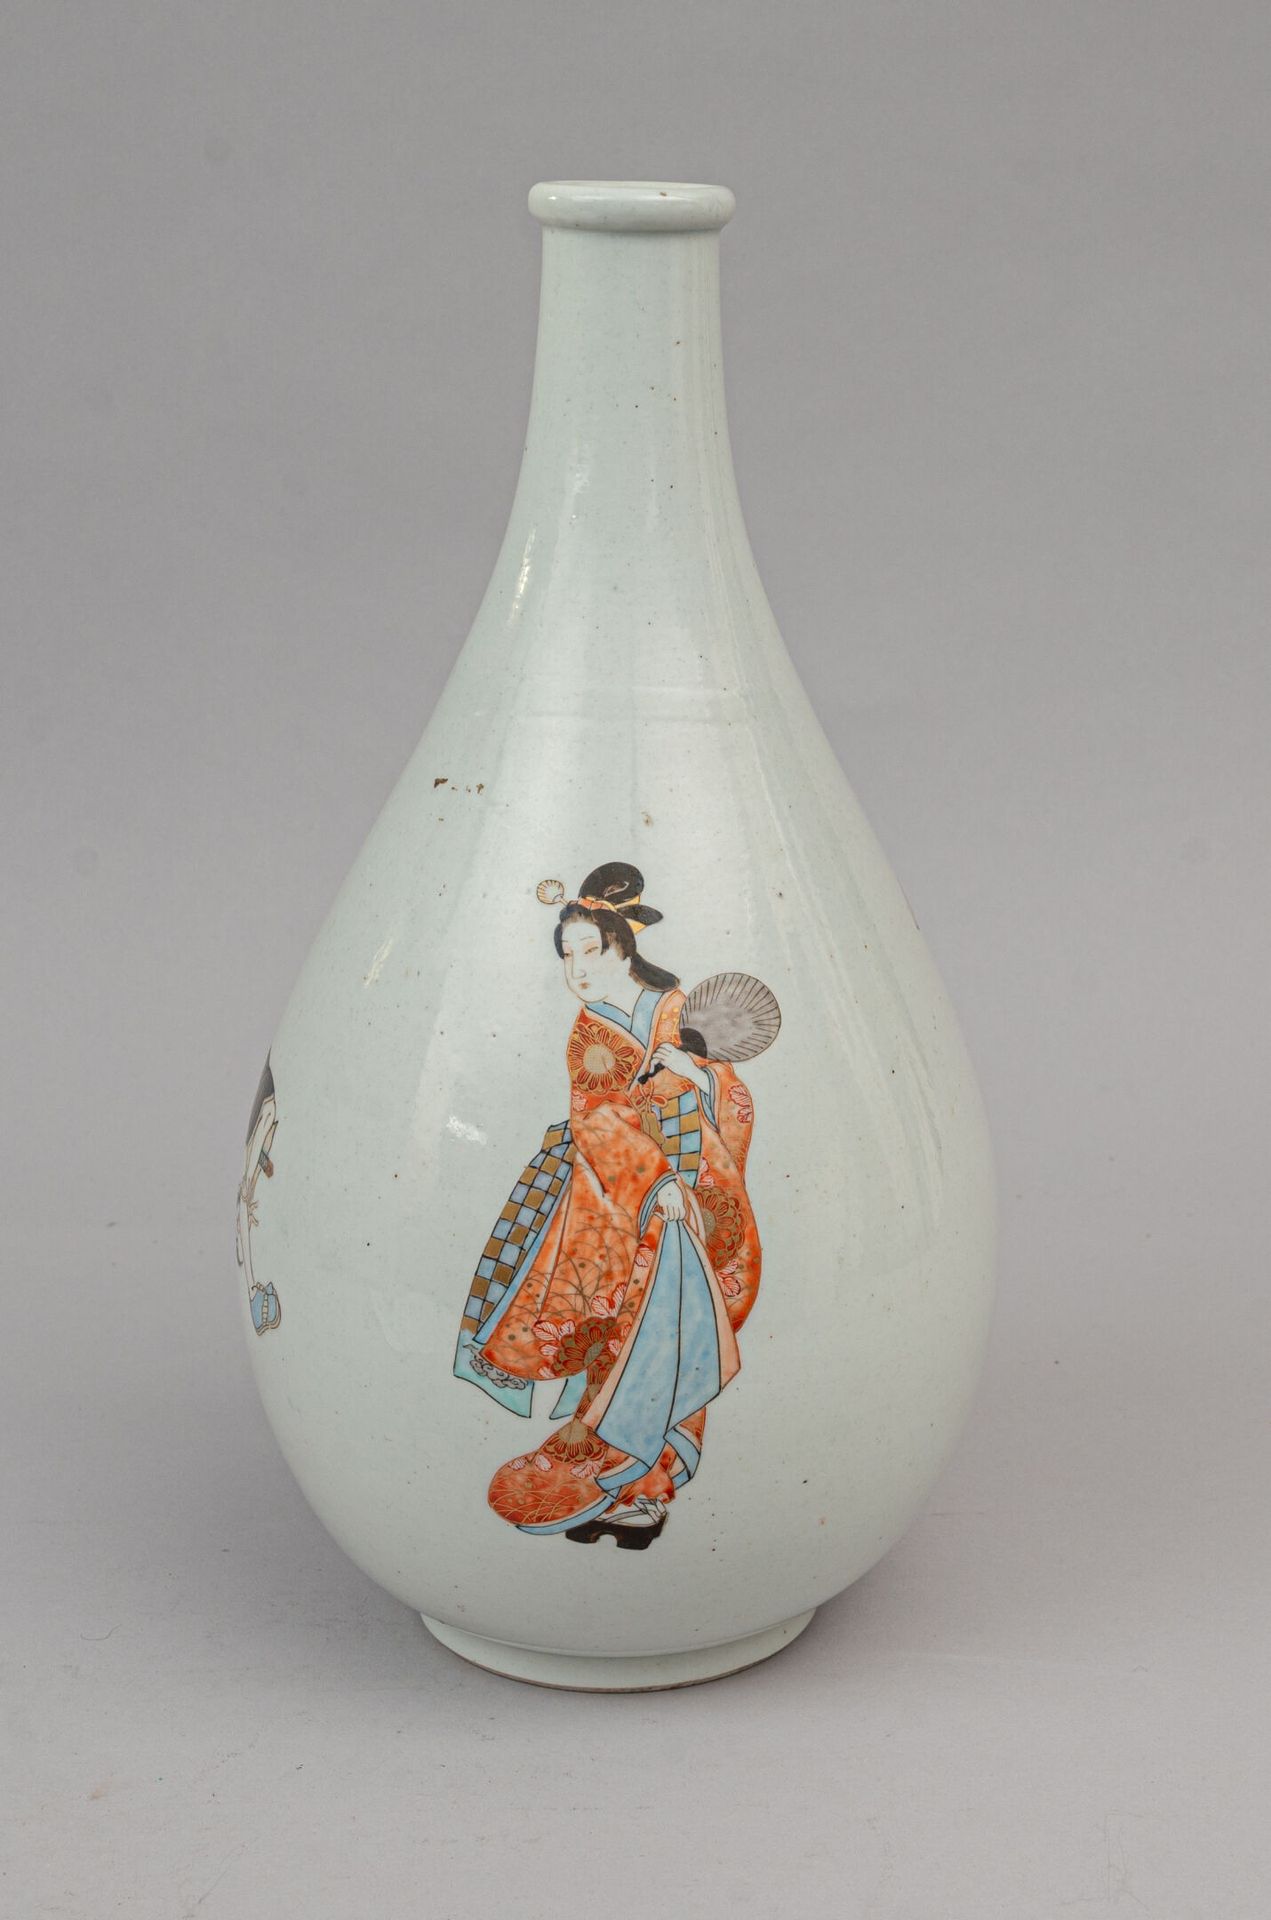 Null 珐琅彩瓷瓶花瓶，日本，明治时期（1868-1912年） 
梨形，瓶身饰三个人物，一个身着红色和淡蓝色和服的女子手持扇子，另两个男子似乎在跳雀舞，其中一&hellip;